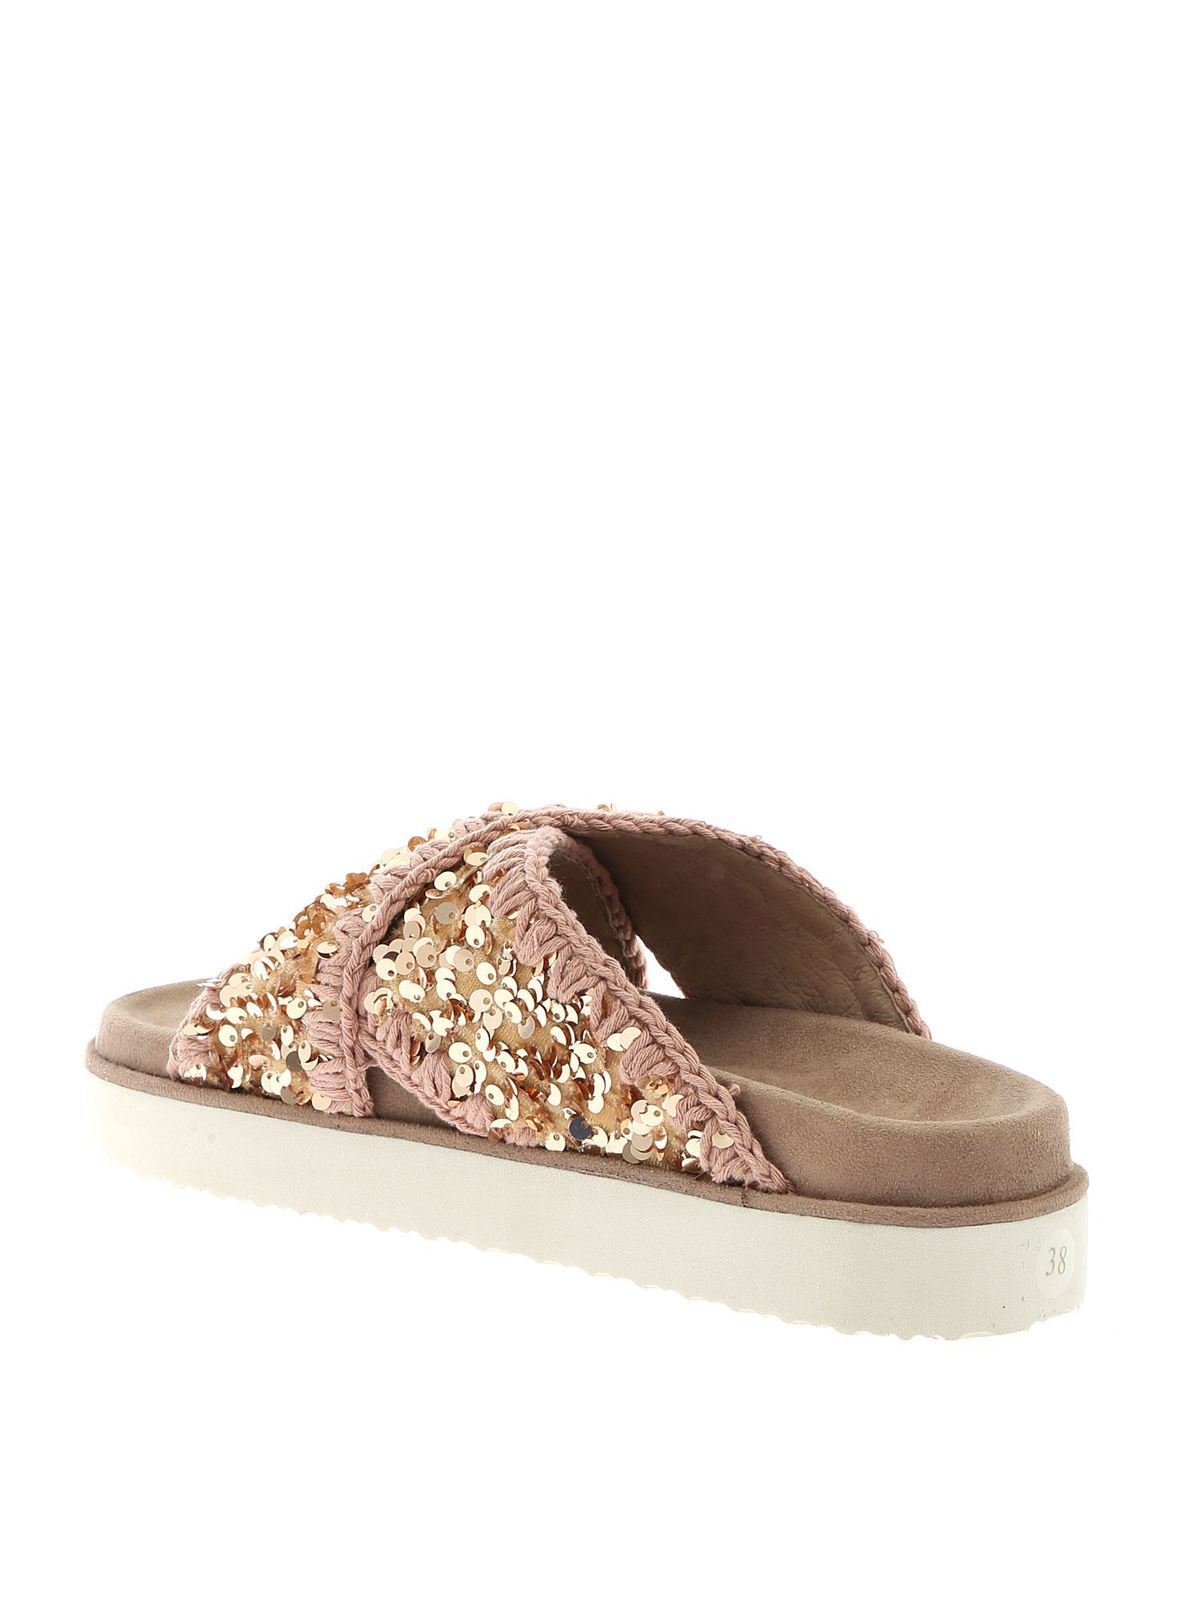 restjes magie In de naam Flip flops Mou - Criss-Cross Bio slippers in antique pink - MUSW251003GSEQRB